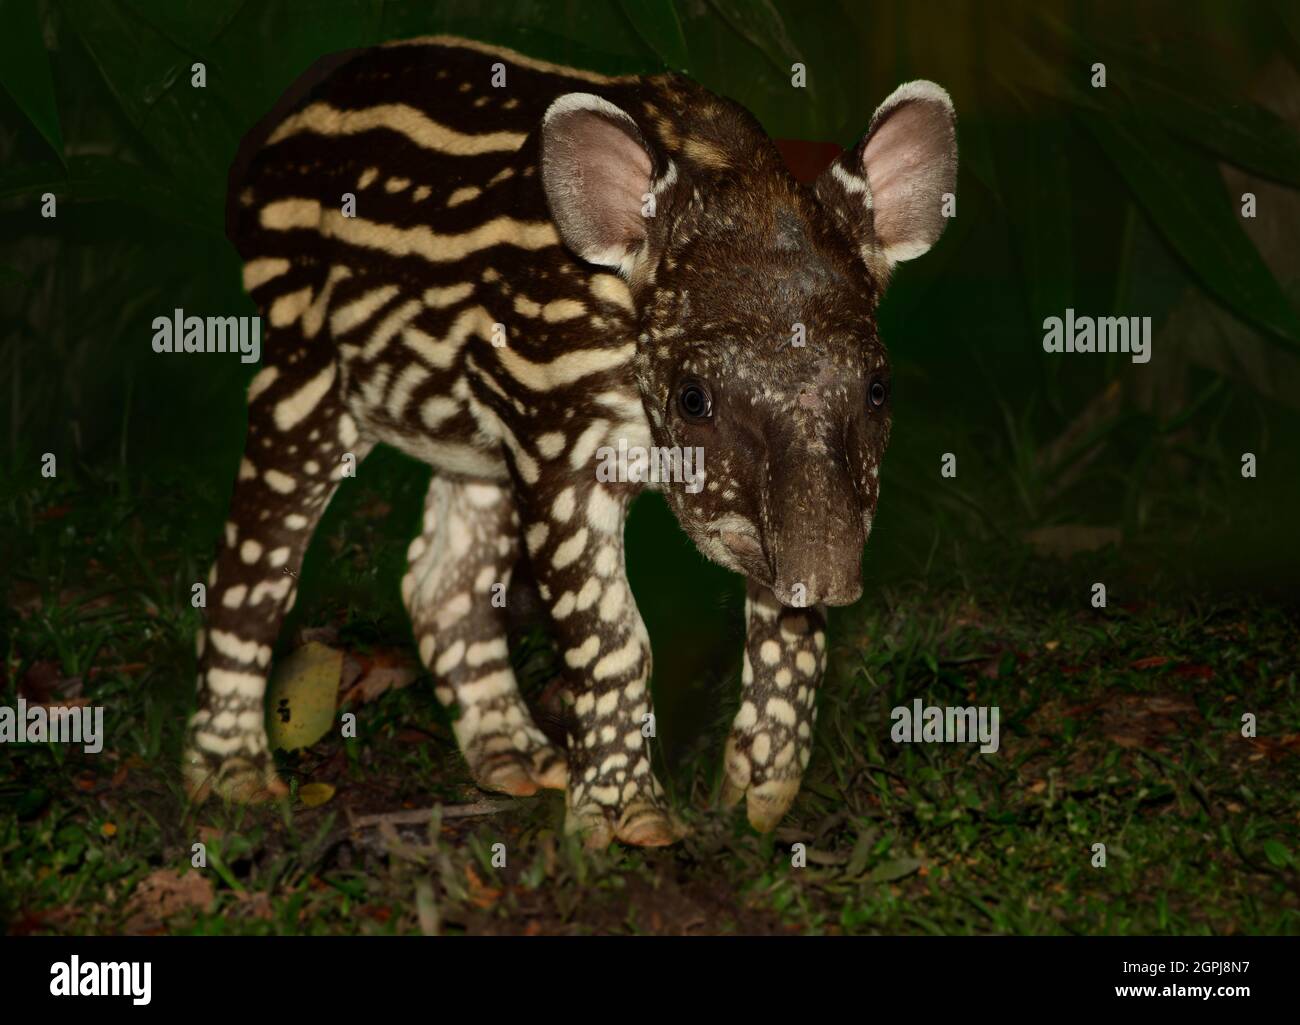 Baby South American tapir (Tapirus terrestris) during night. Manu National Park, Peru Stock Photo